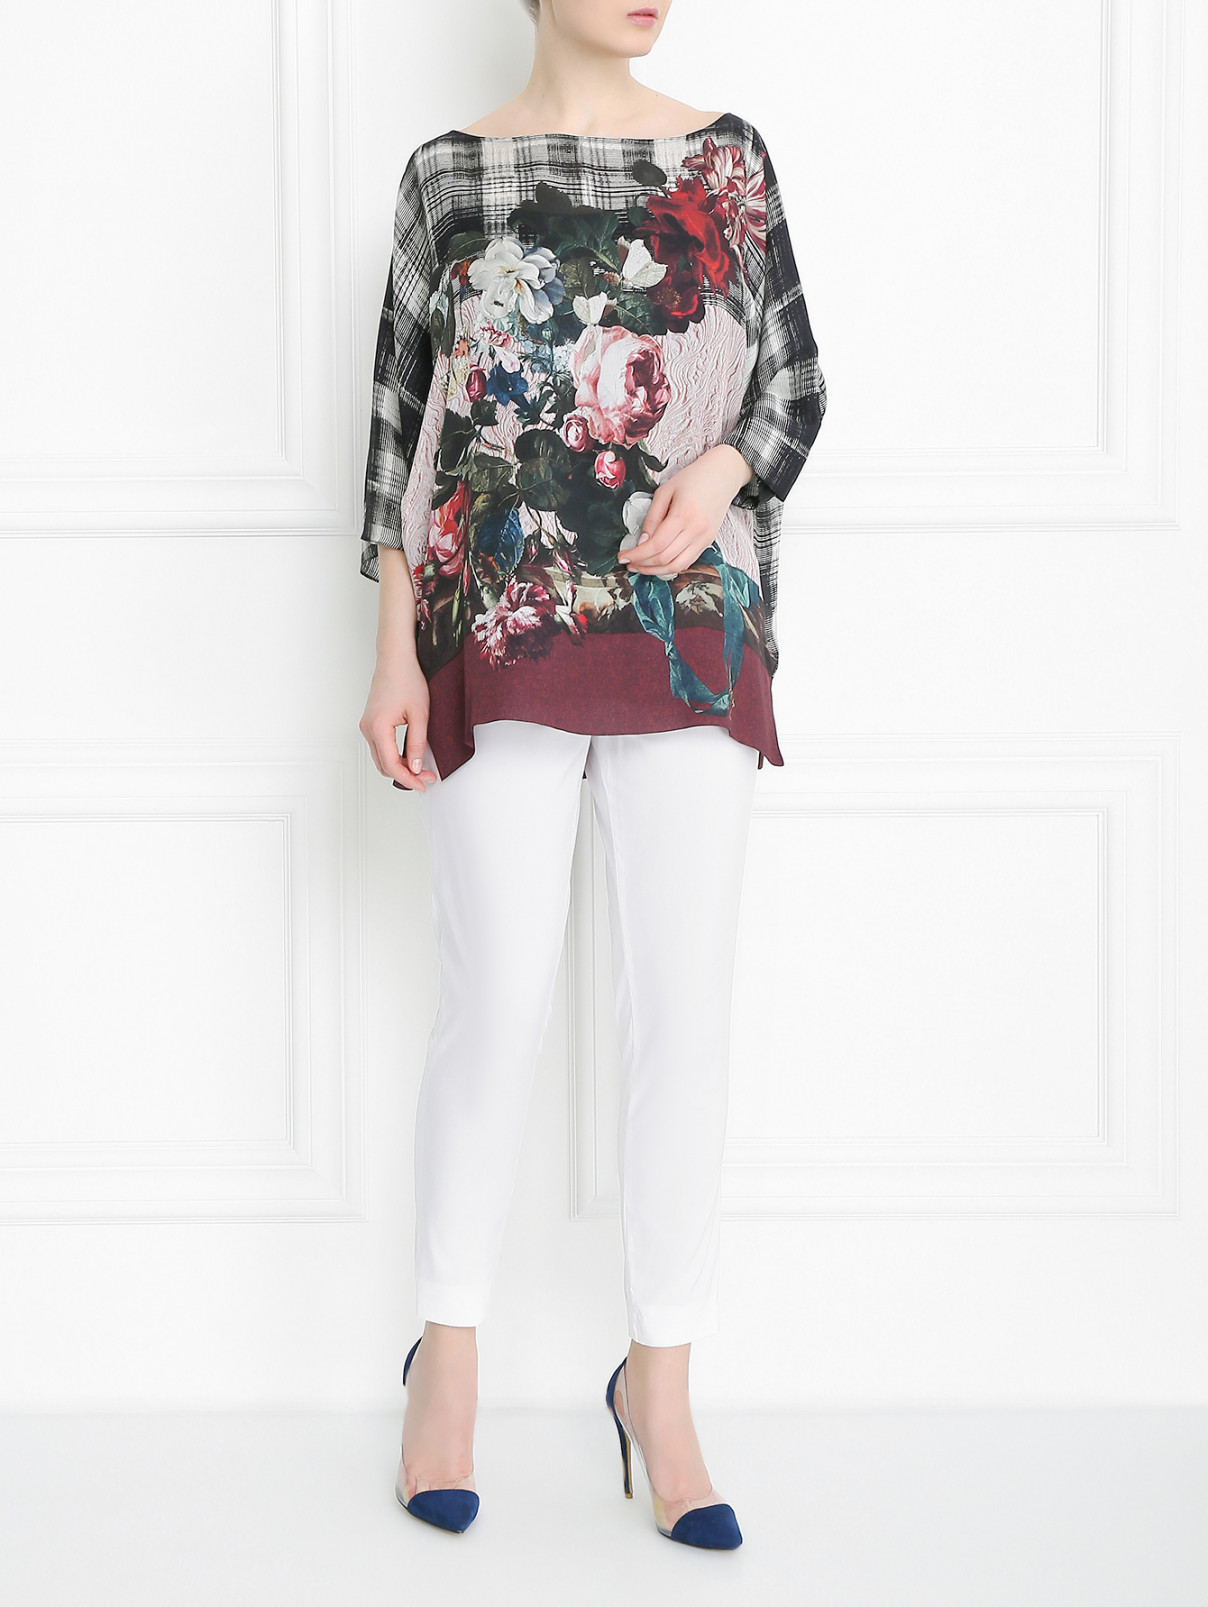 Узкие брюки из хлопка на резинке Marina Rinaldi  –  Модель Общий вид  – Цвет:  Белый